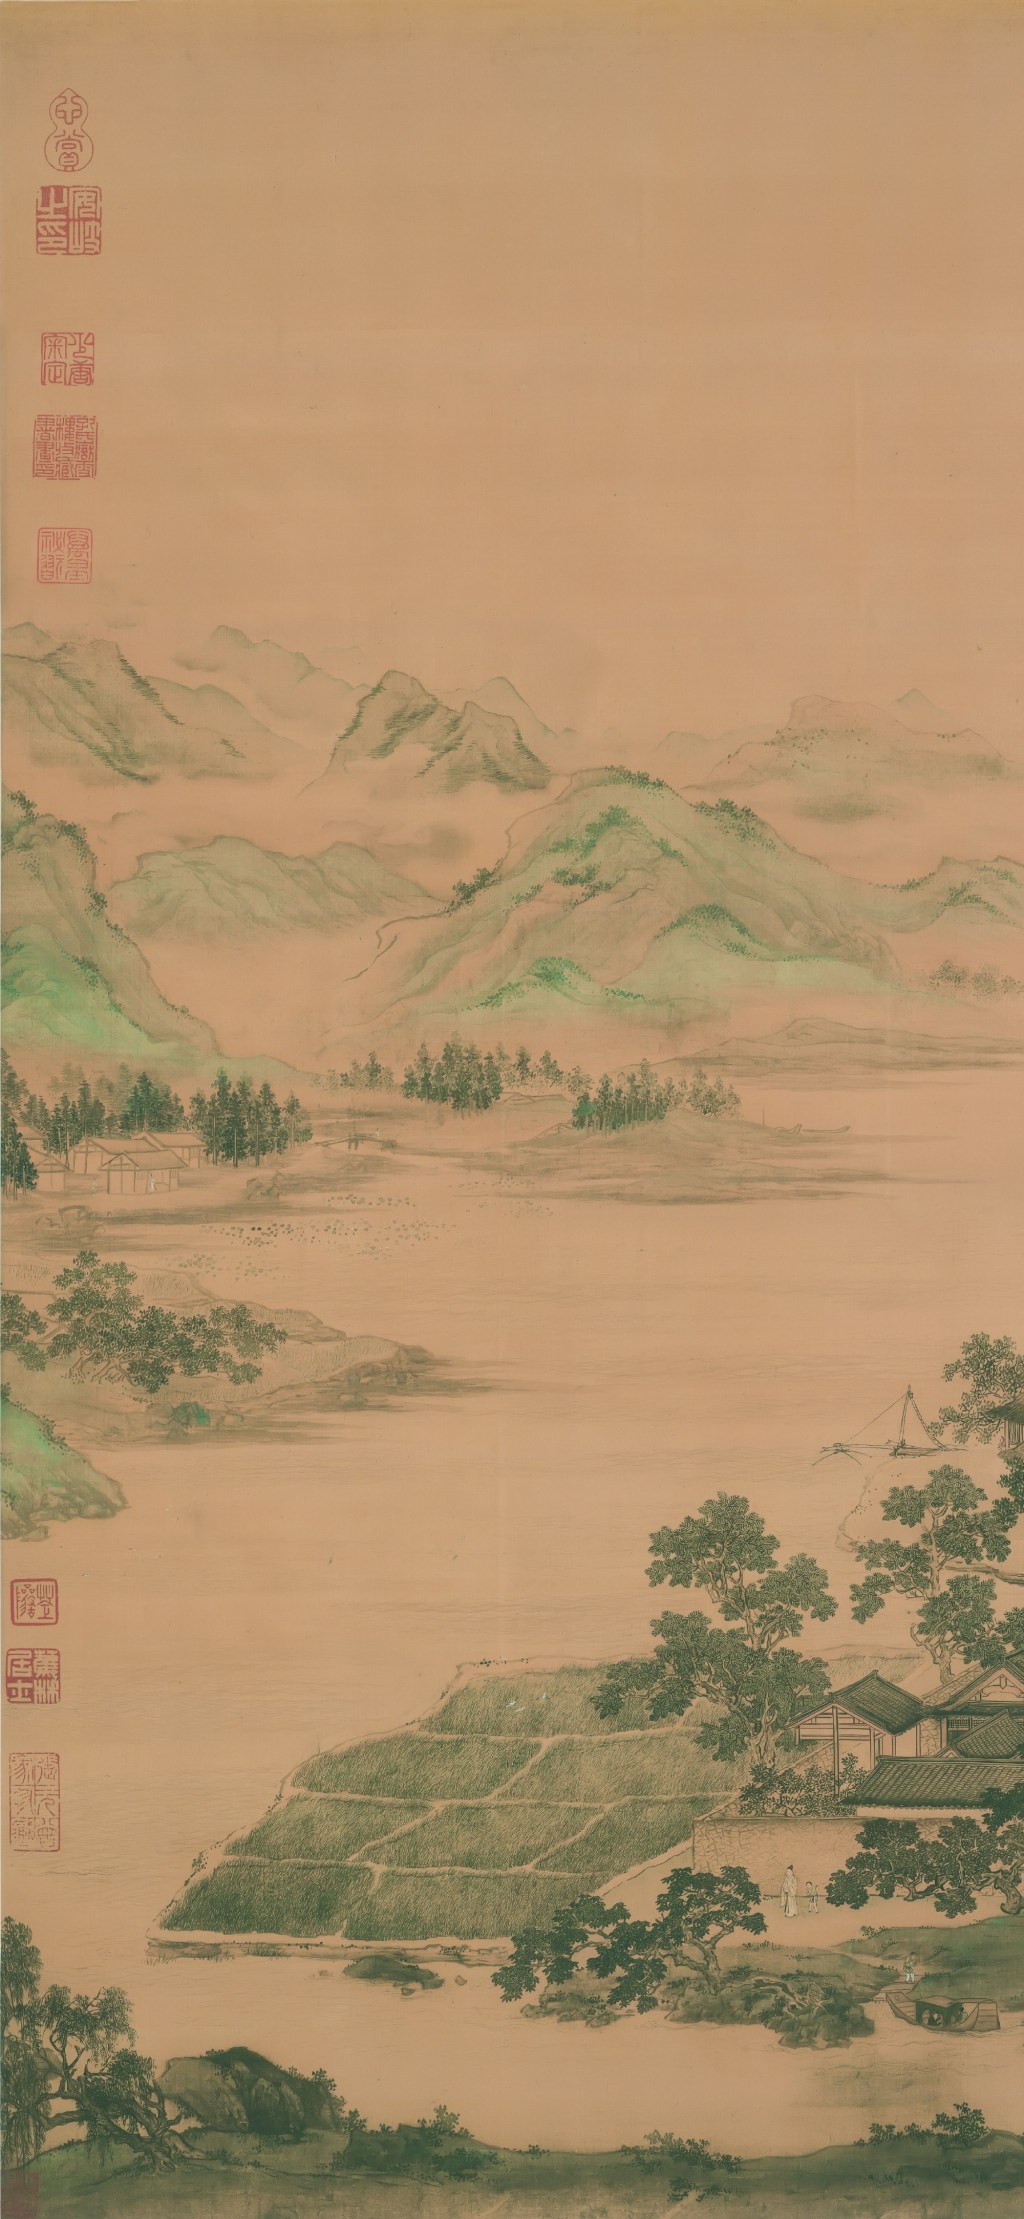 中国风古典艺术画手机壁纸